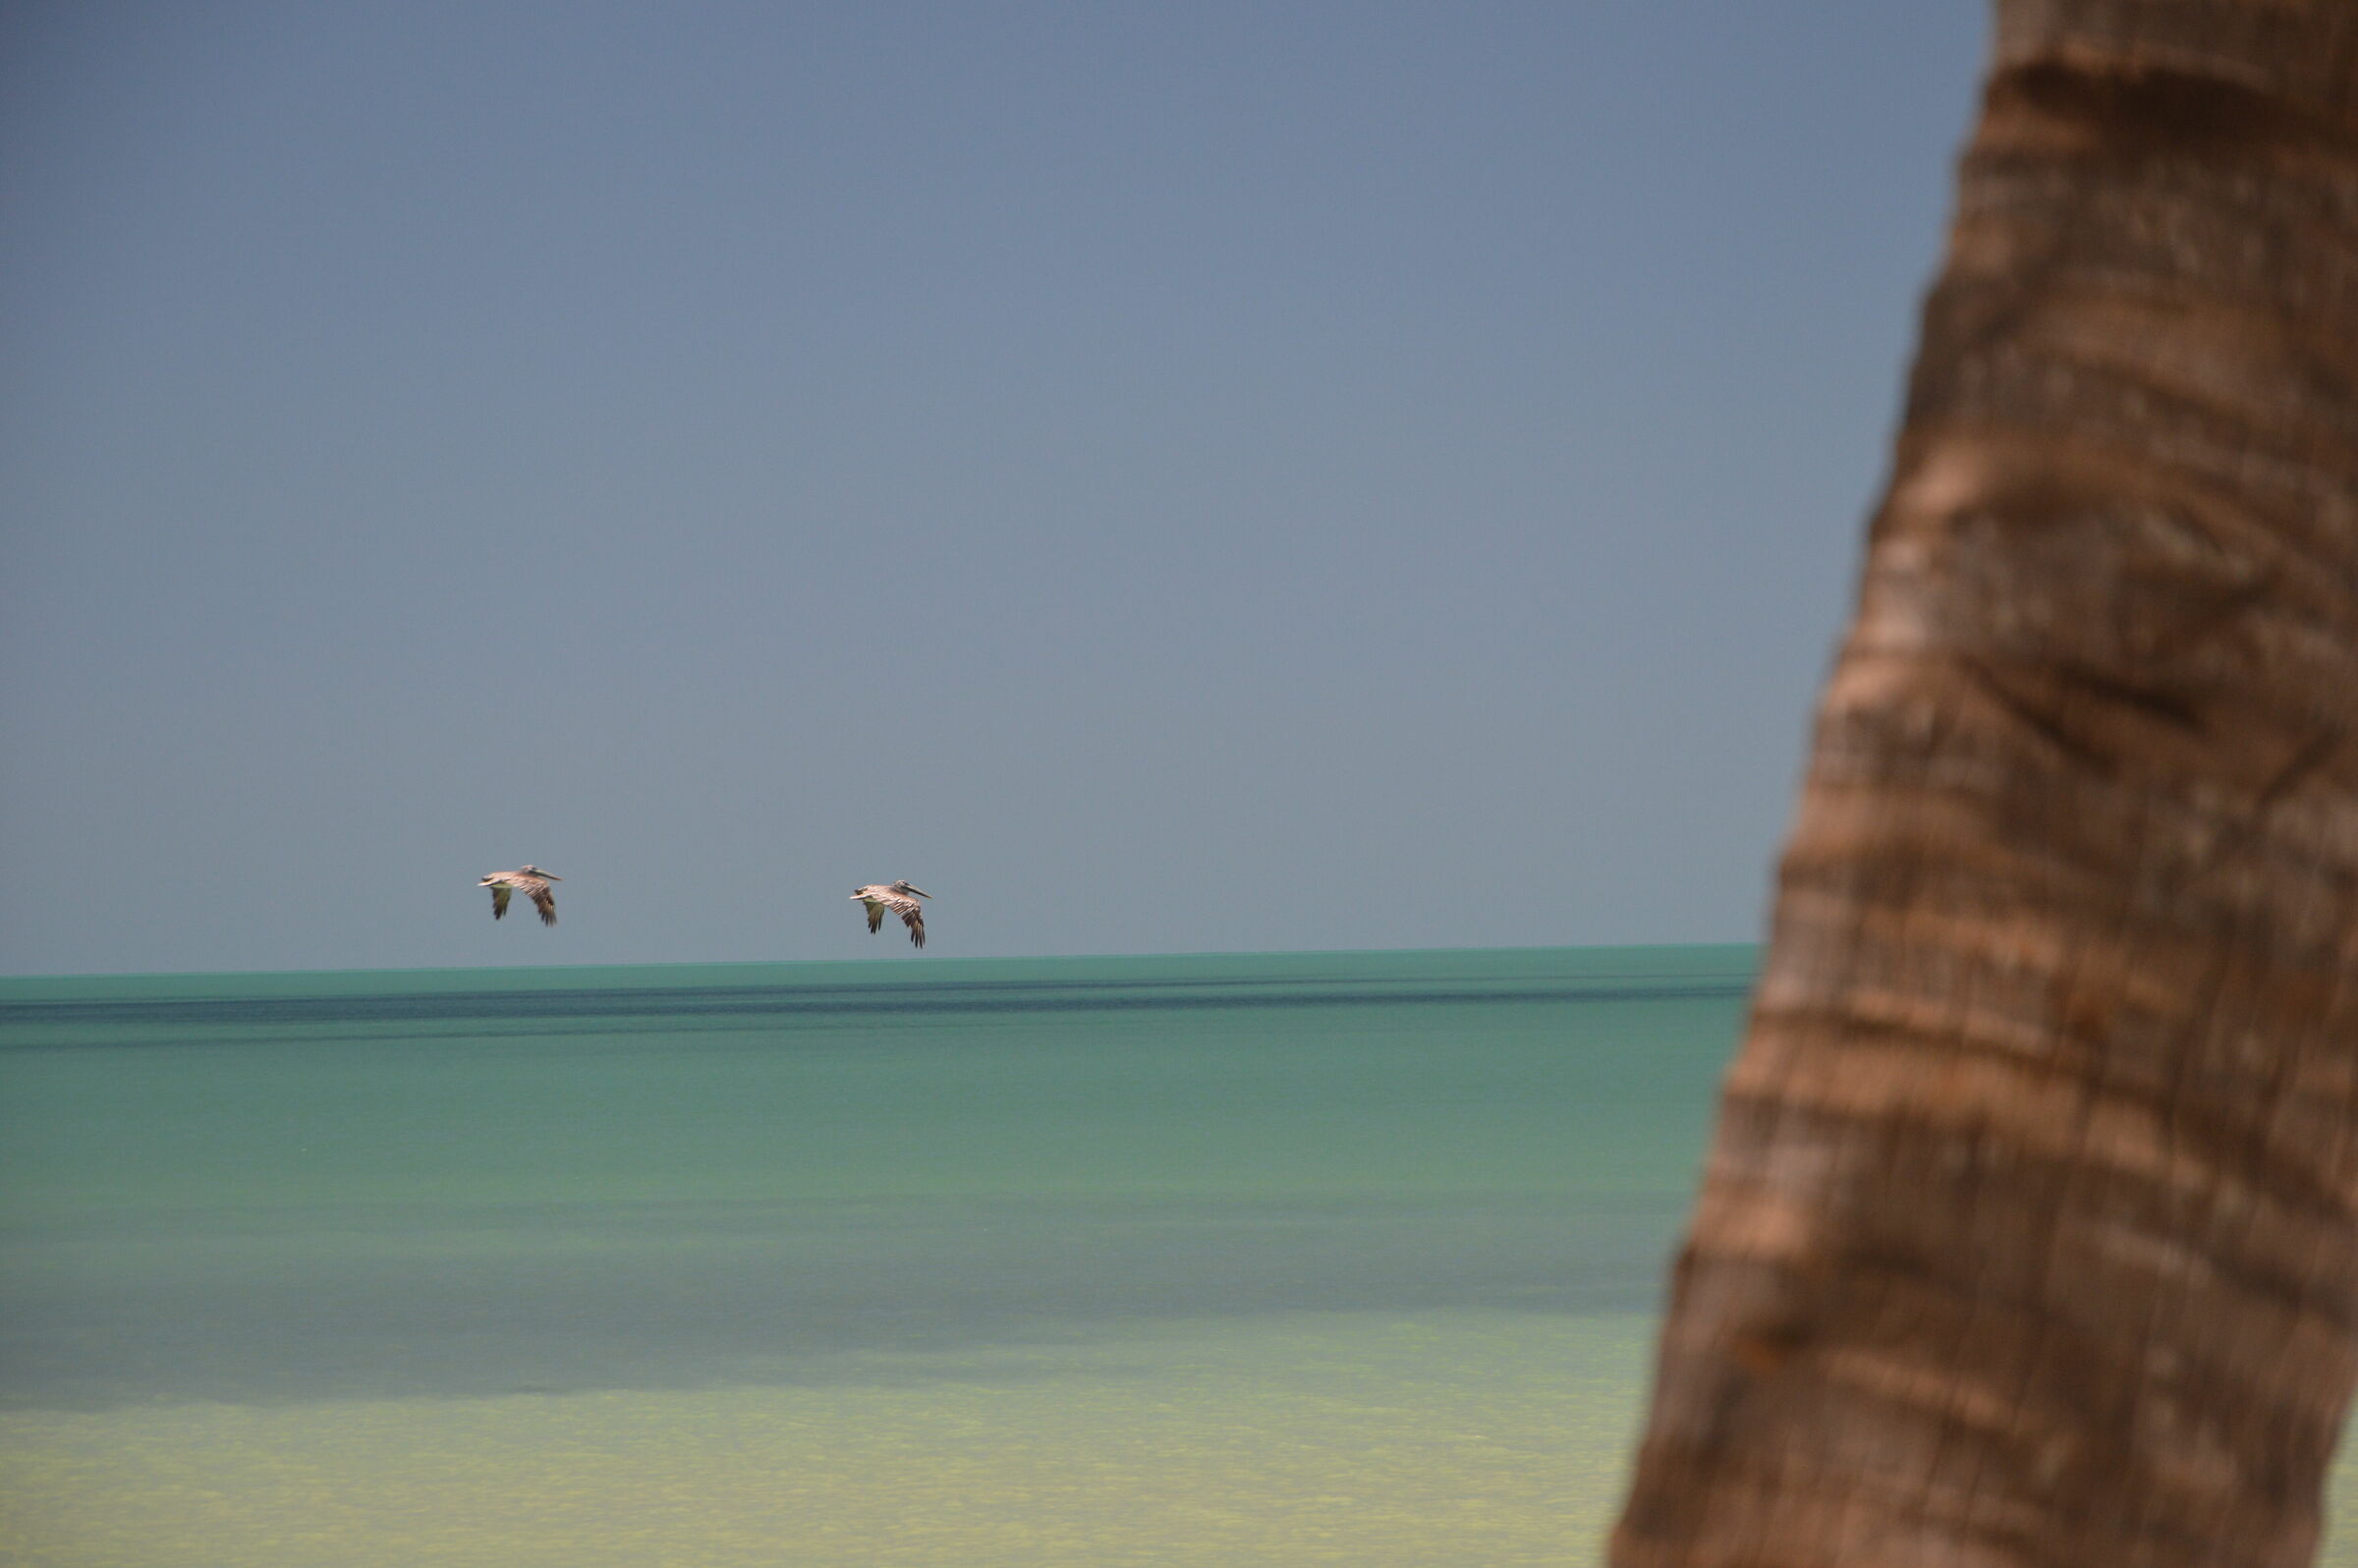 Pelicans on the horizon...